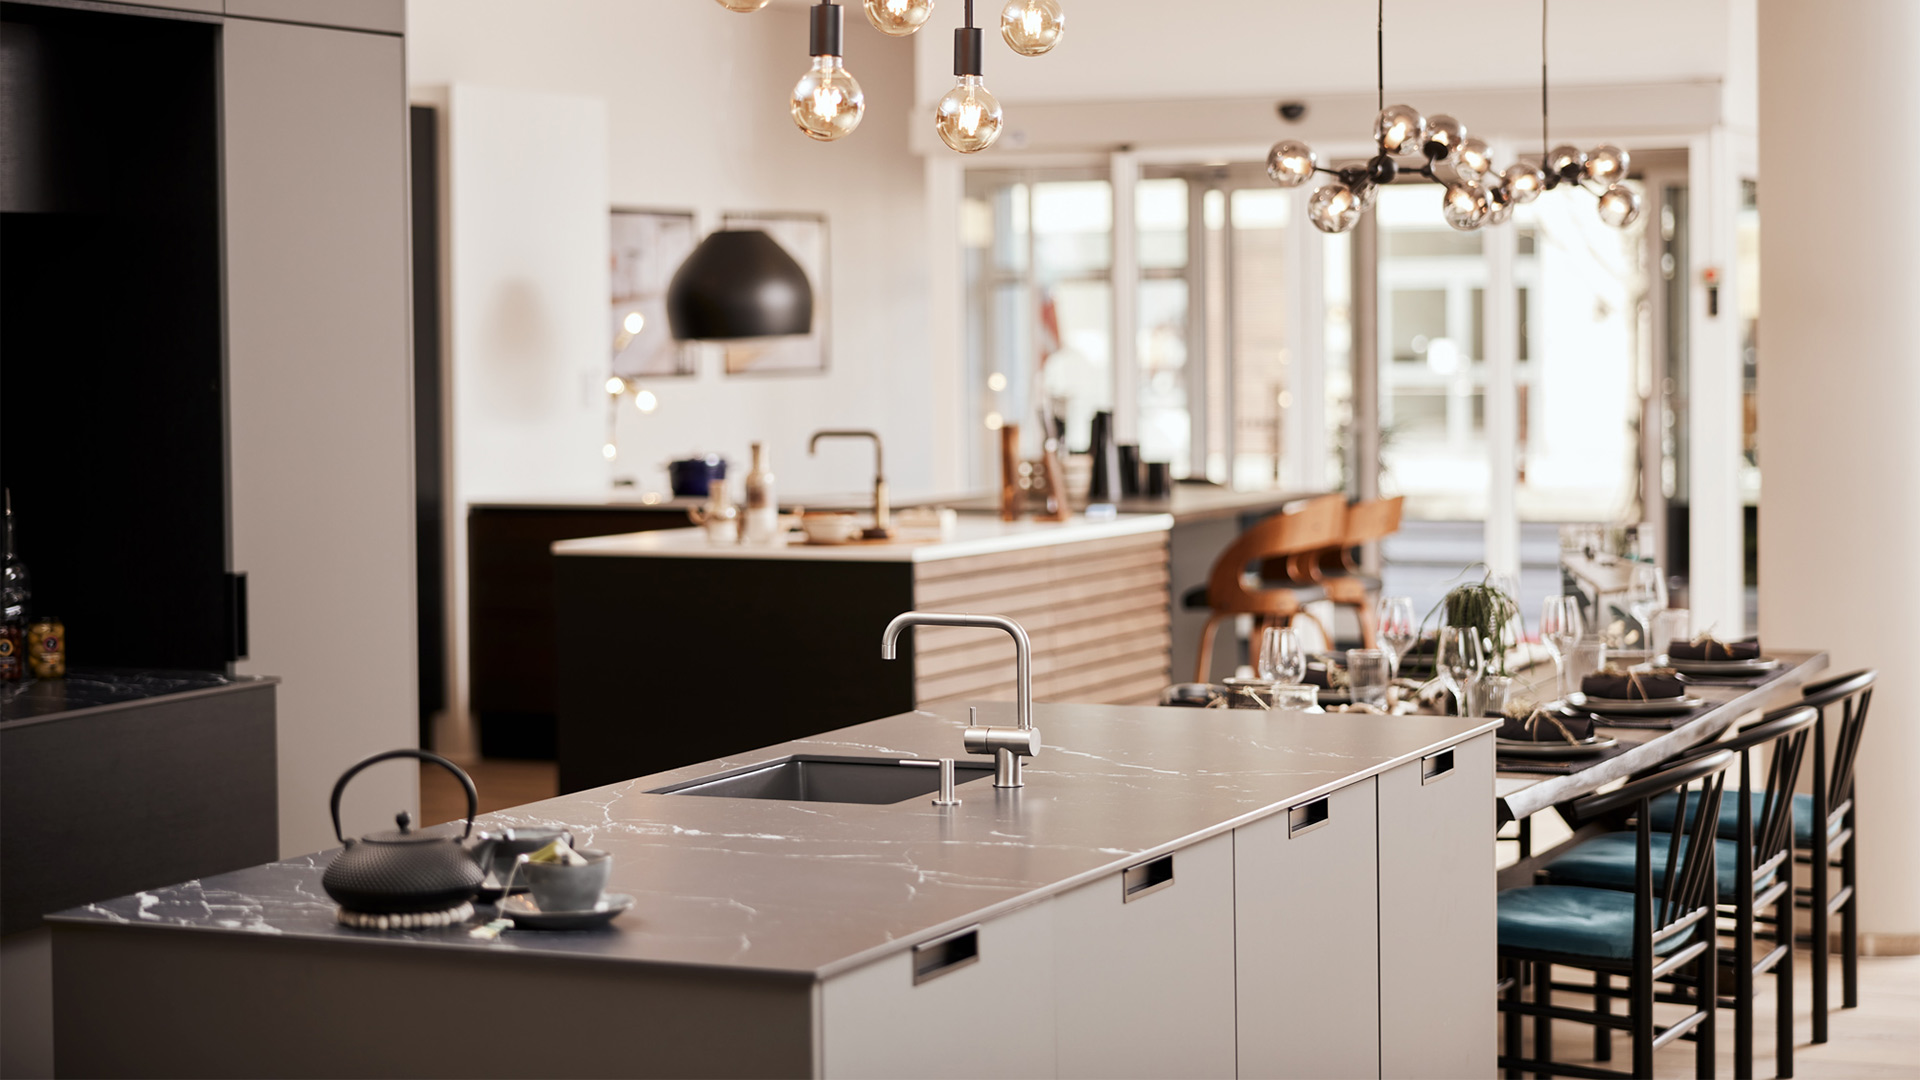 Tvis Køkken Vejle - køkkenfirma med nye køkkener, badeværelser og garderobeskabe